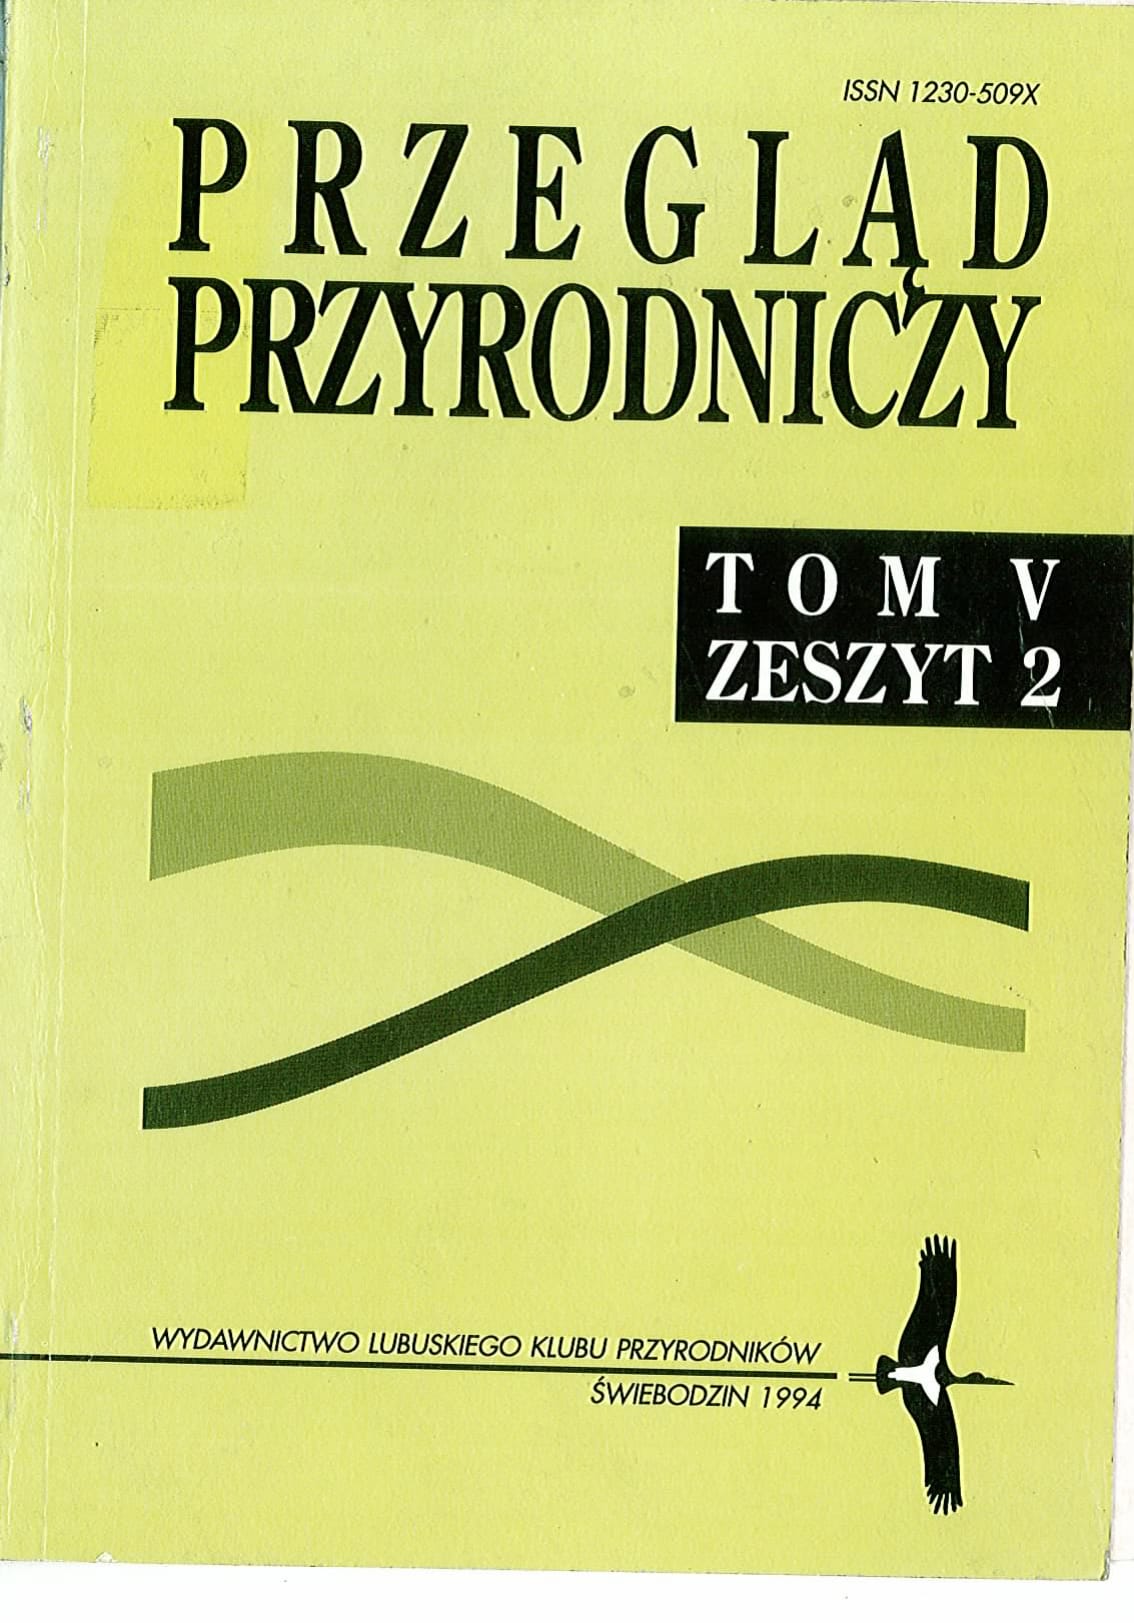 PP T.5 Z.2 1994.1 1